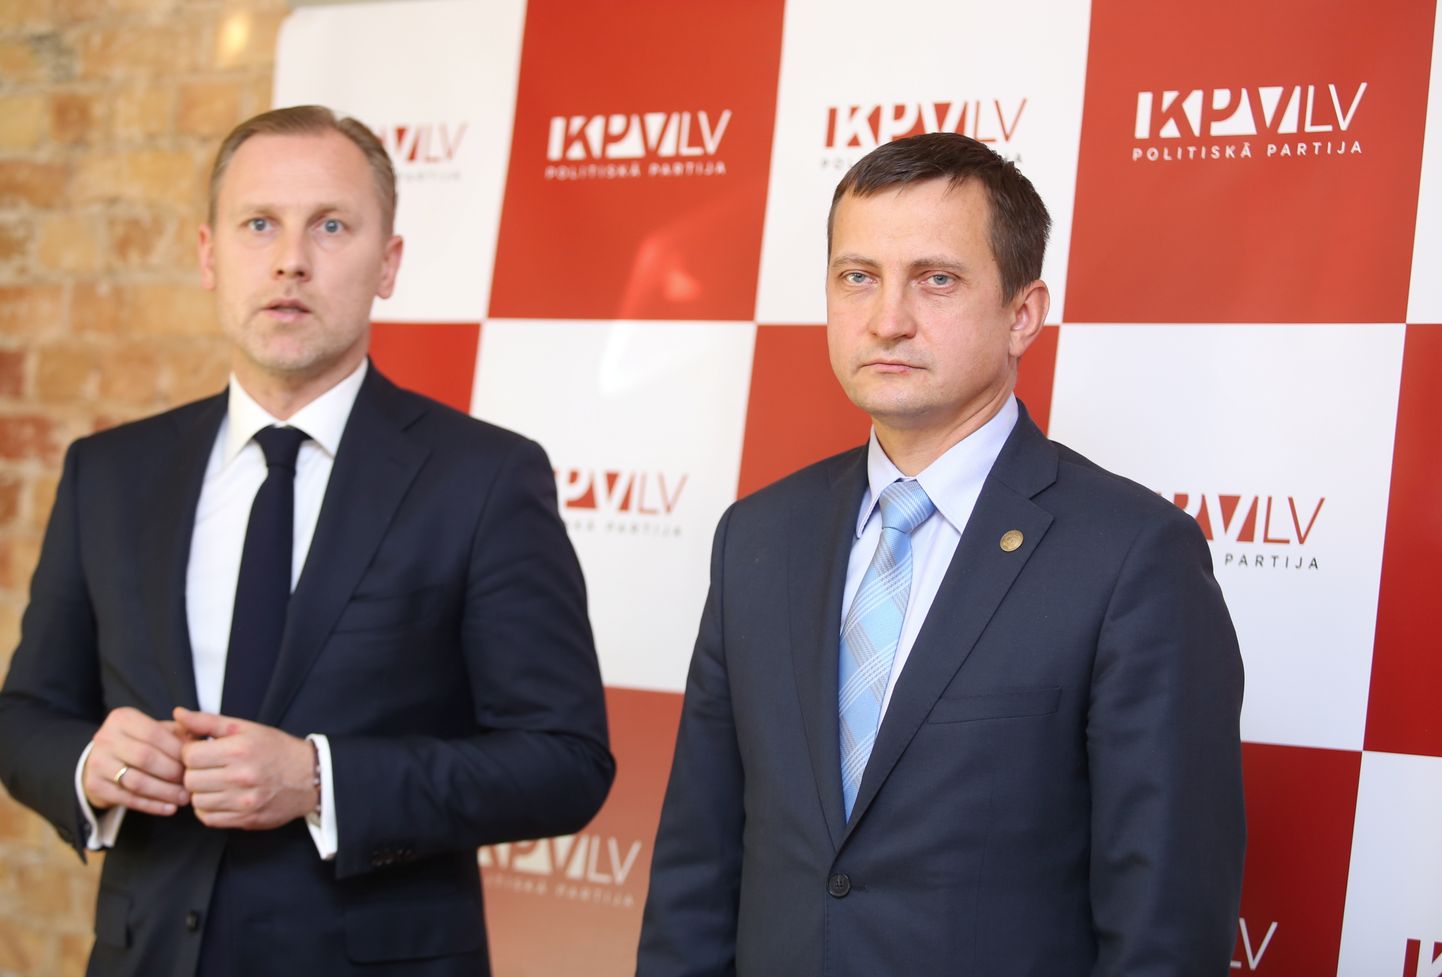 Partijas "KPV LV" pārstāvis - premjera amata kandidāts Aldis Gobzems (no kreisās) un Zaļo un zemnieku savienības pārstāvis - valdes priekšsēdētājs Armands Krauze.